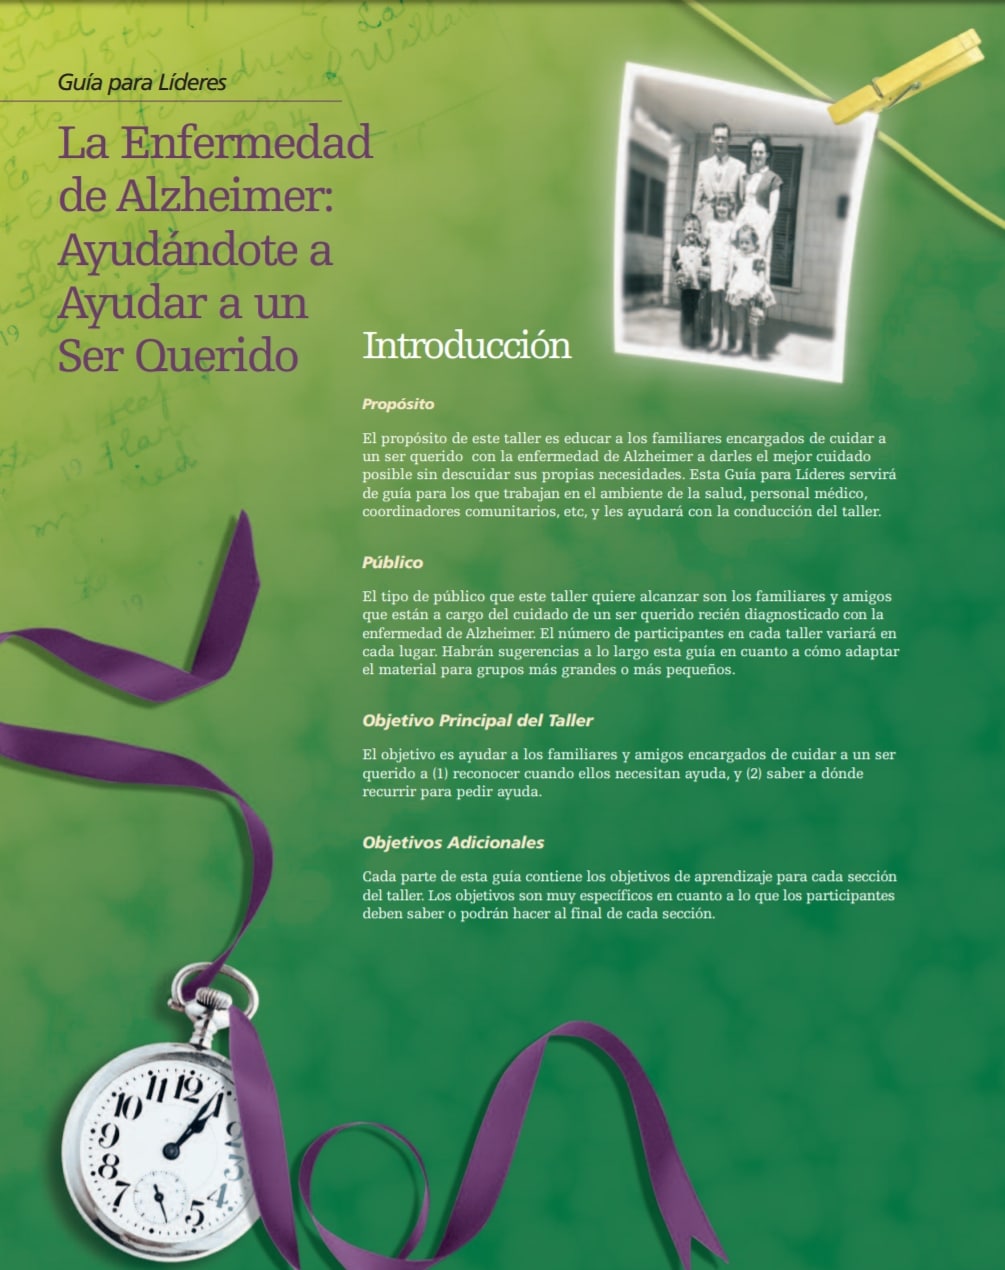 Alzheimer: introducción a la guía del líder.